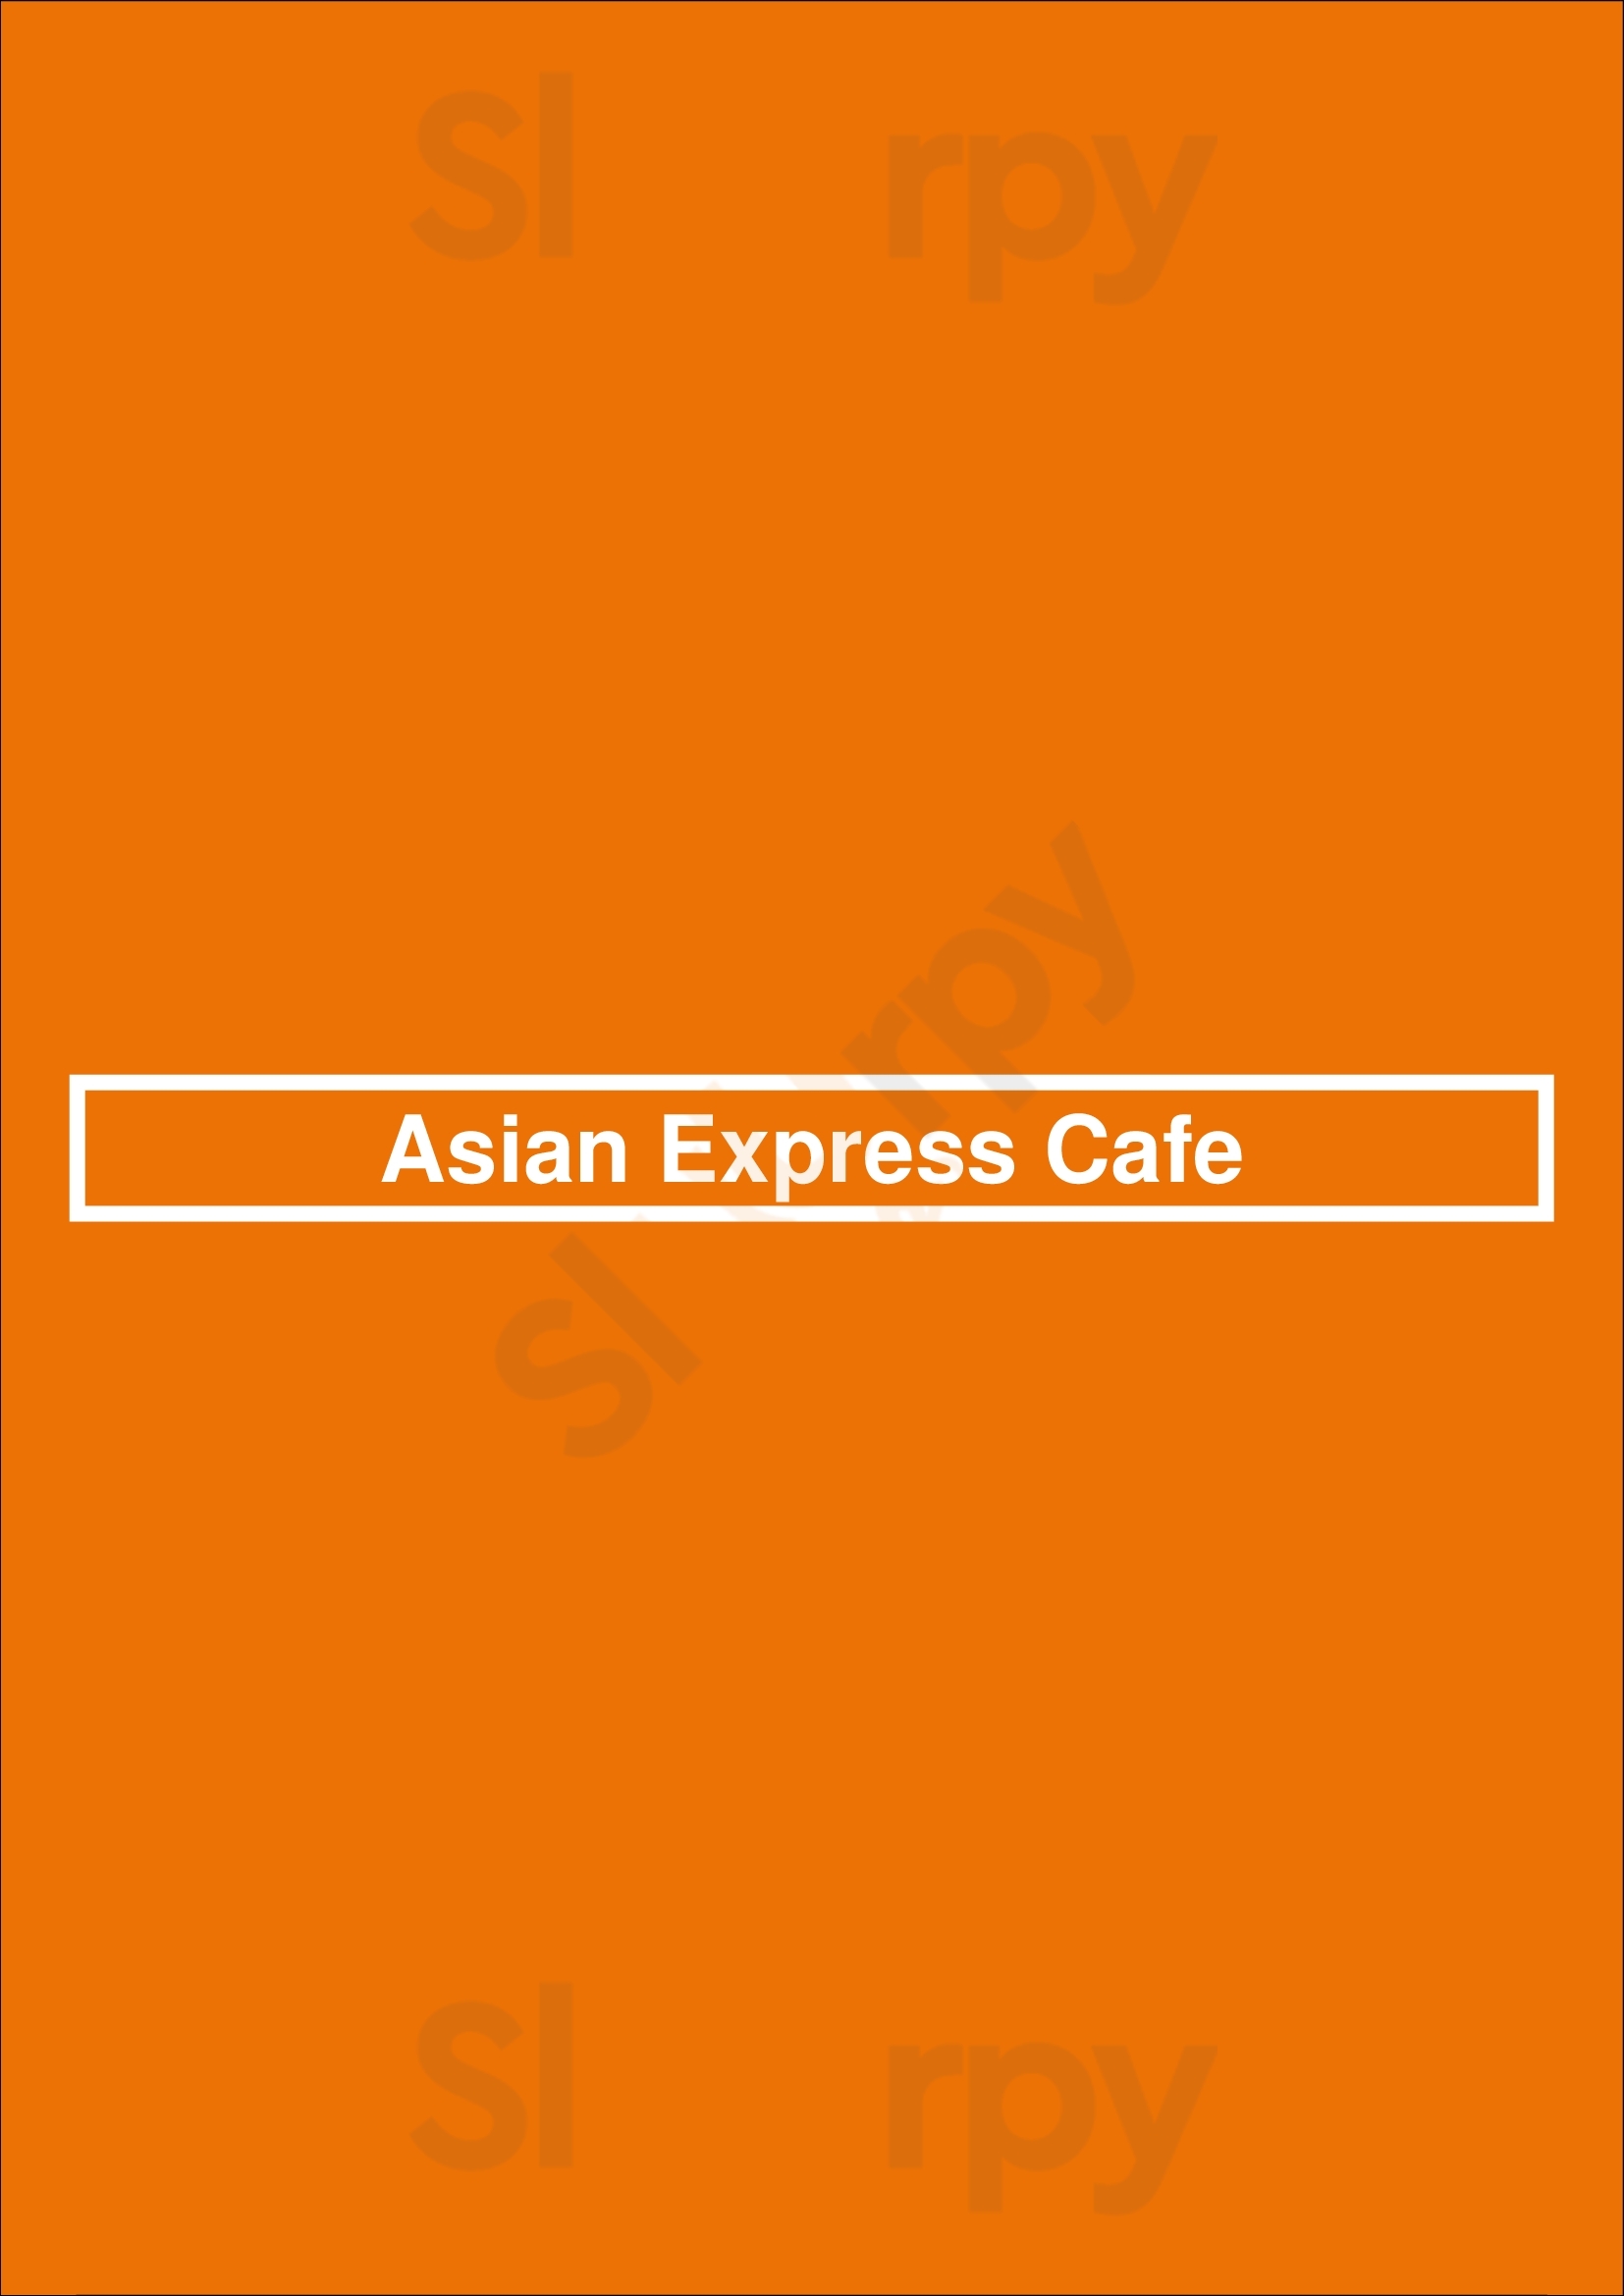 Asian Express Cafe Indianapolis Menu - 1